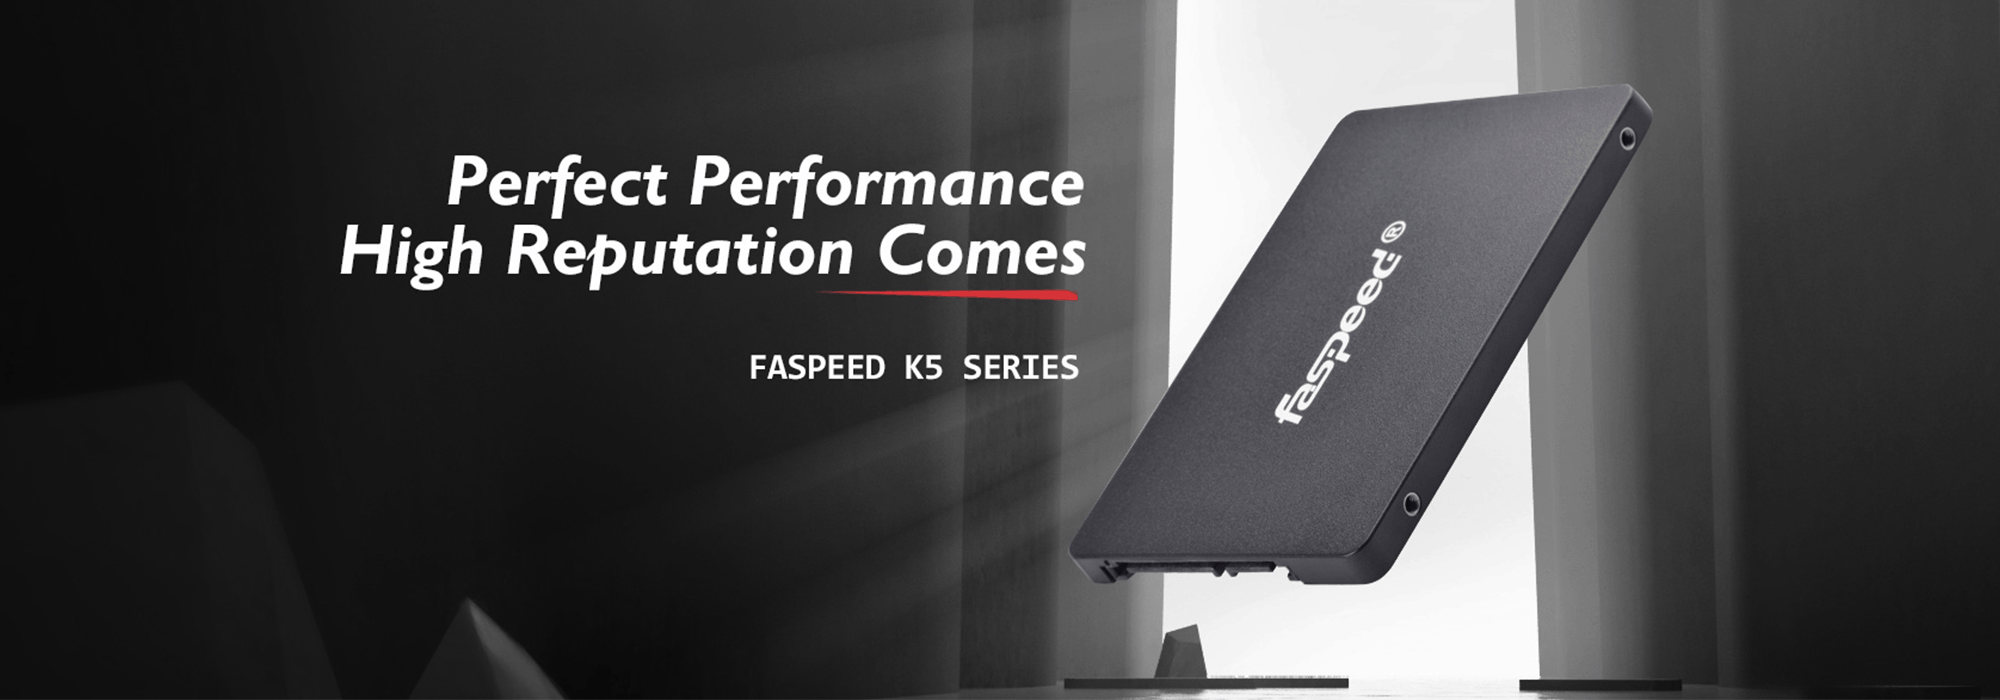 Faspeed SSD K5 Sata 黑色背景 高性能 黑暗中放光明